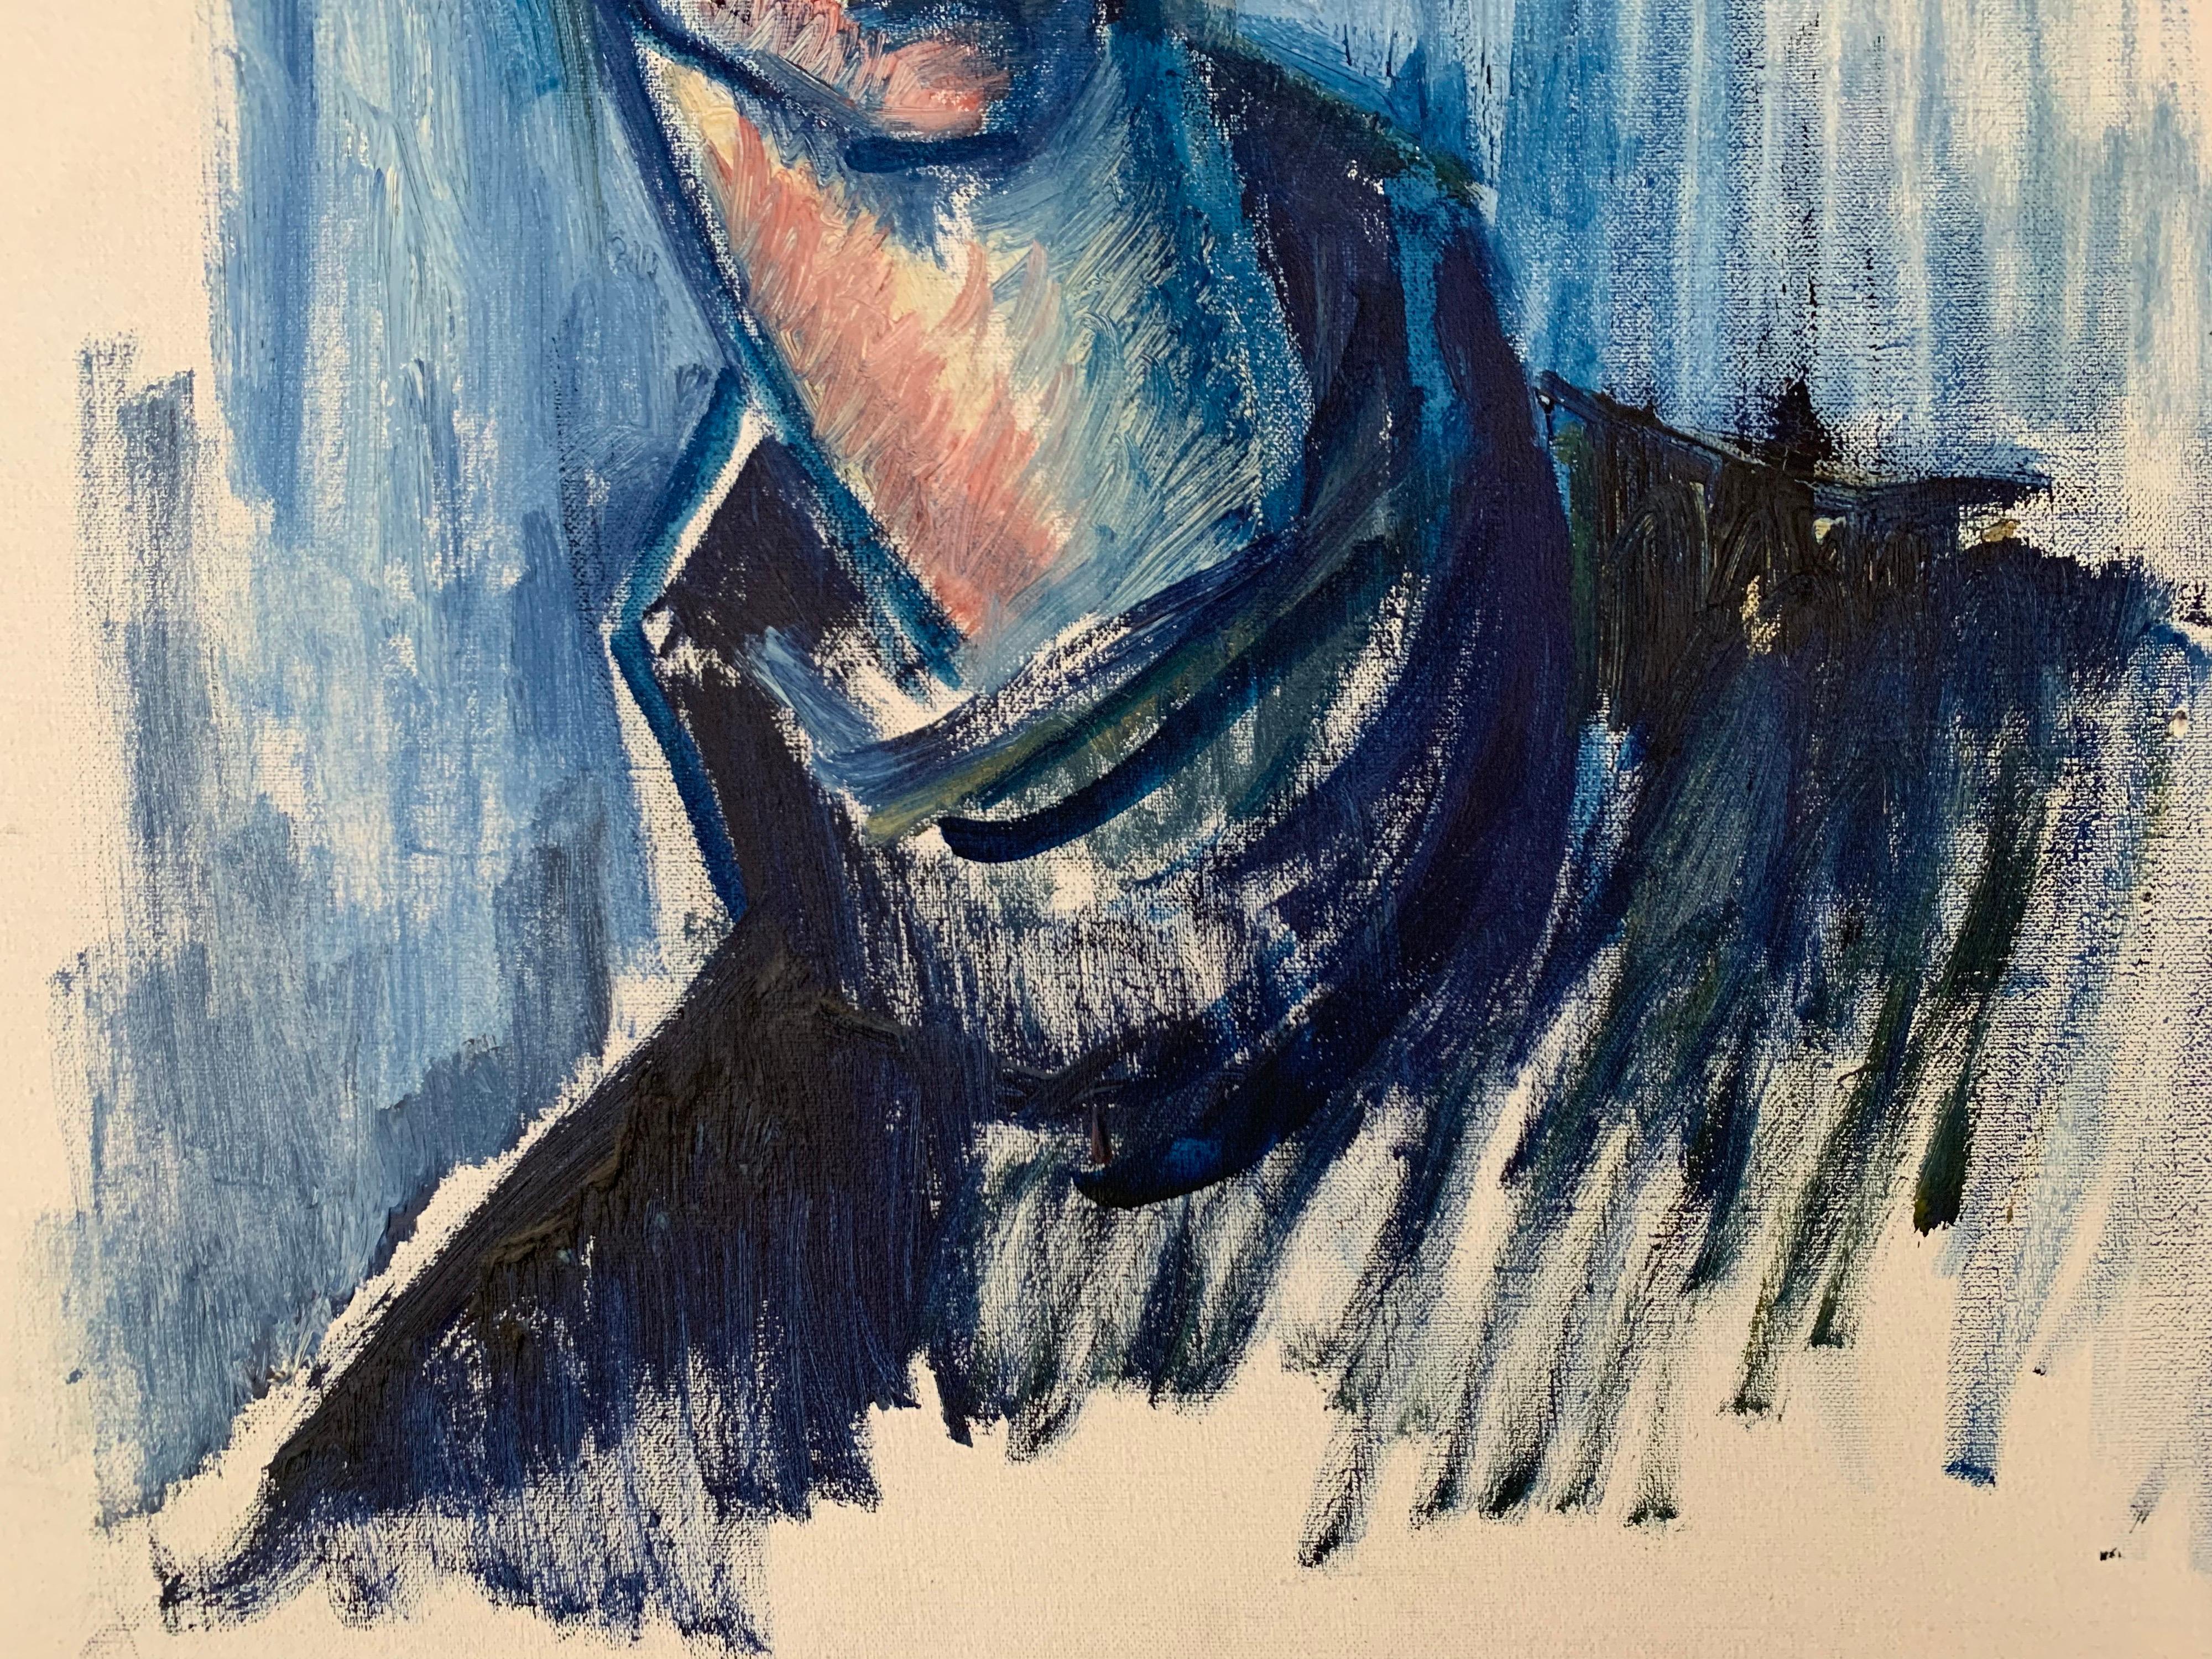 L'homme en bleu
École française, vers 2000
peinture à l'huile sur toile, encadrée
toile : 60cm x 50cm
encadré : 76cm x 66cm

Superbe portrait décoratif français d'un jeune homme, peint en bleu. Merveilleusement esquissé par l'artiste dans sa façon